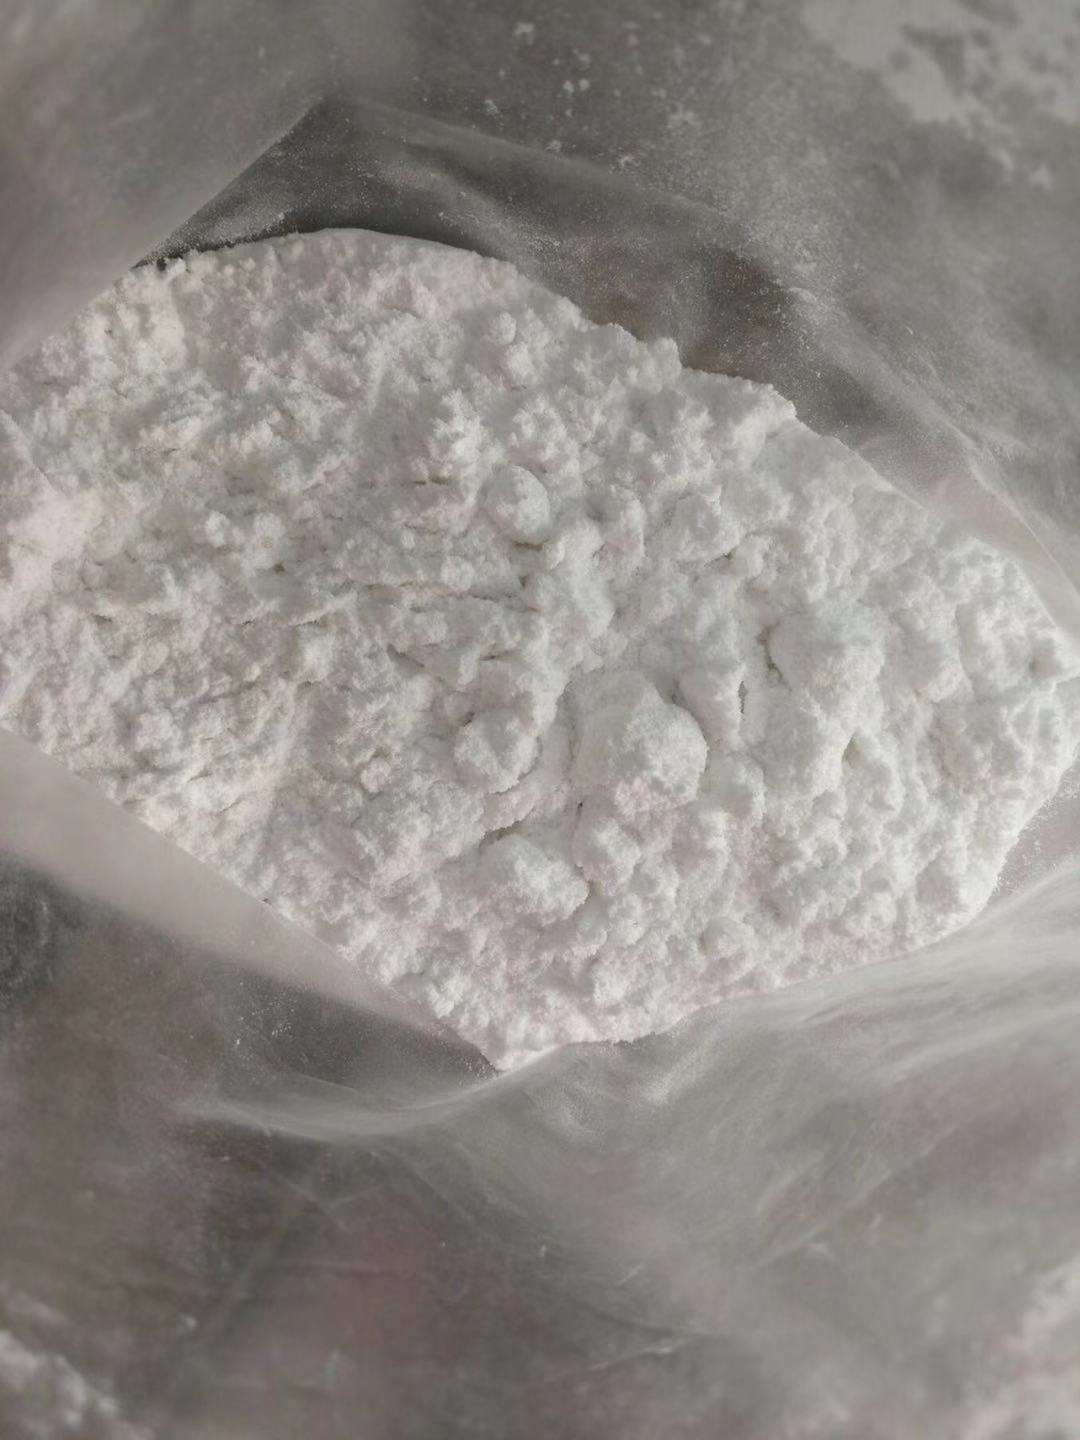 高纯度盐酸利多卡因粉末 CAS 73-78-9 Lidocaine hcl Powder